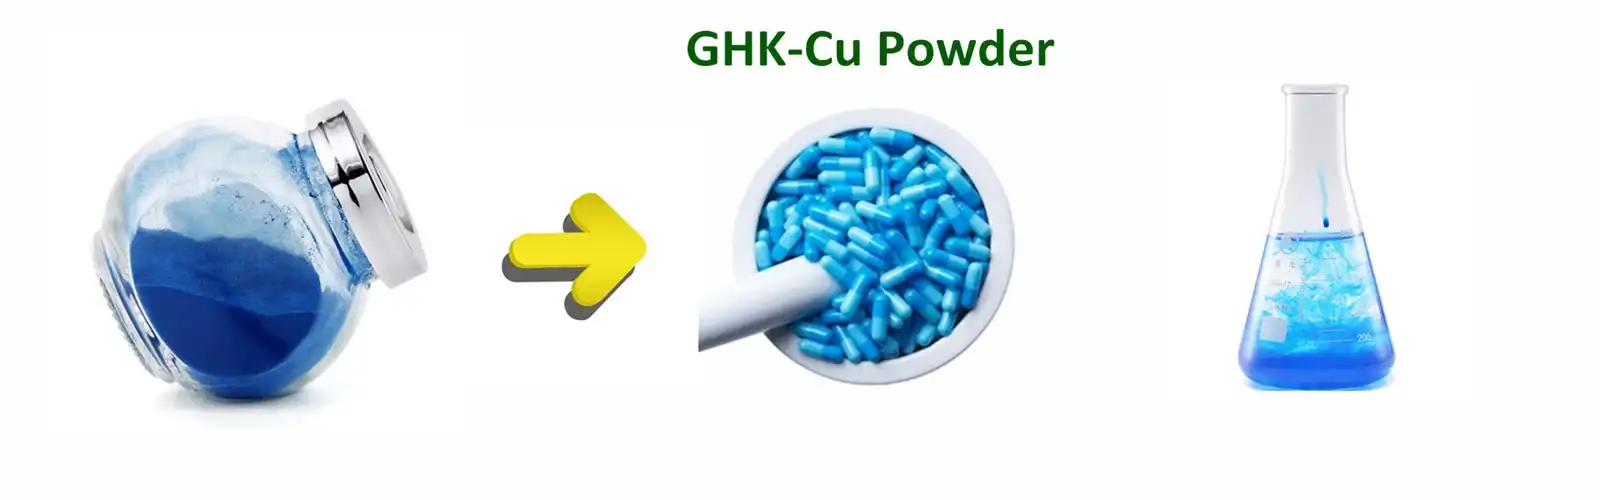 GHK-Cu powder bulk